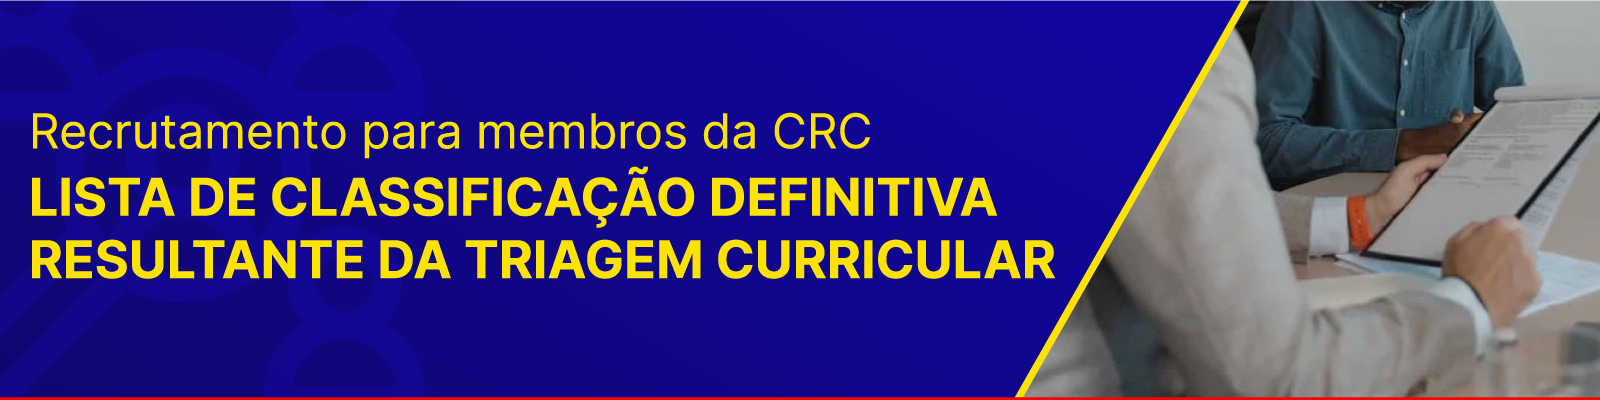 Recrutamento para Membros da CRC: Lista de Classificação Definitiva Resultante da Triagem Curricular